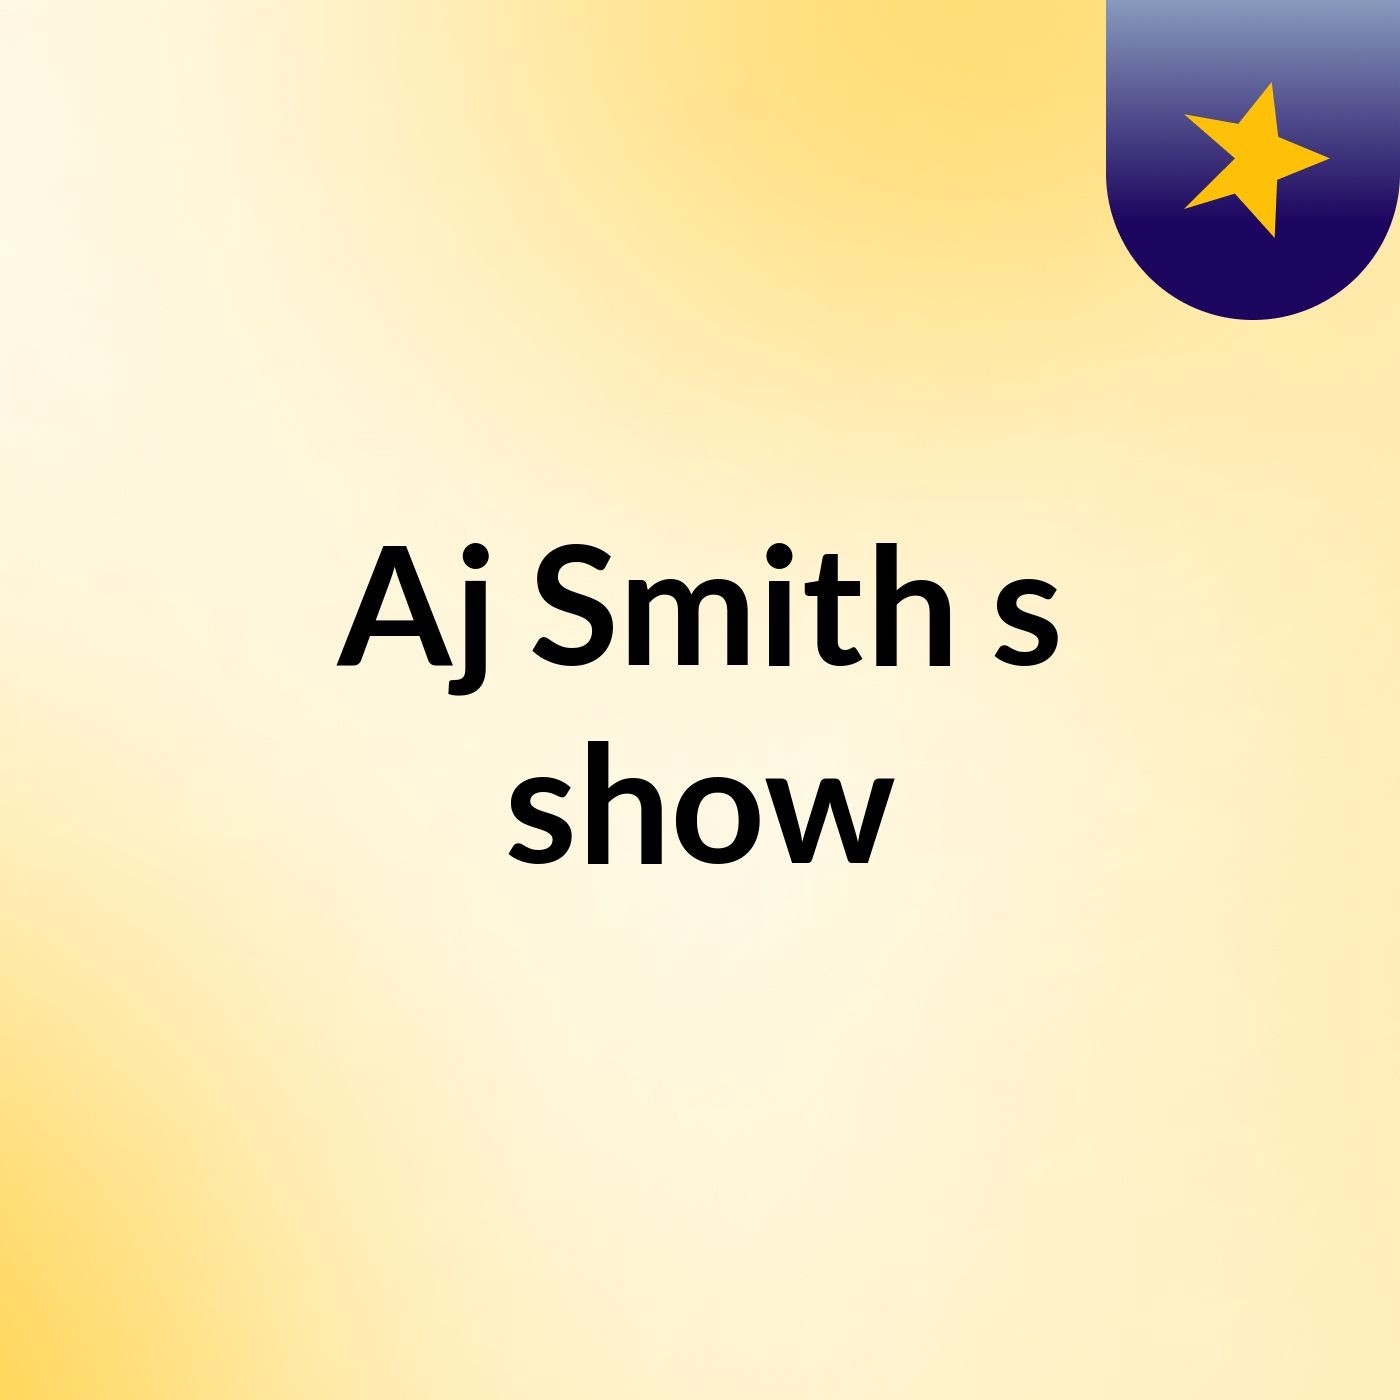 Episode 12 - Aj Smith's show